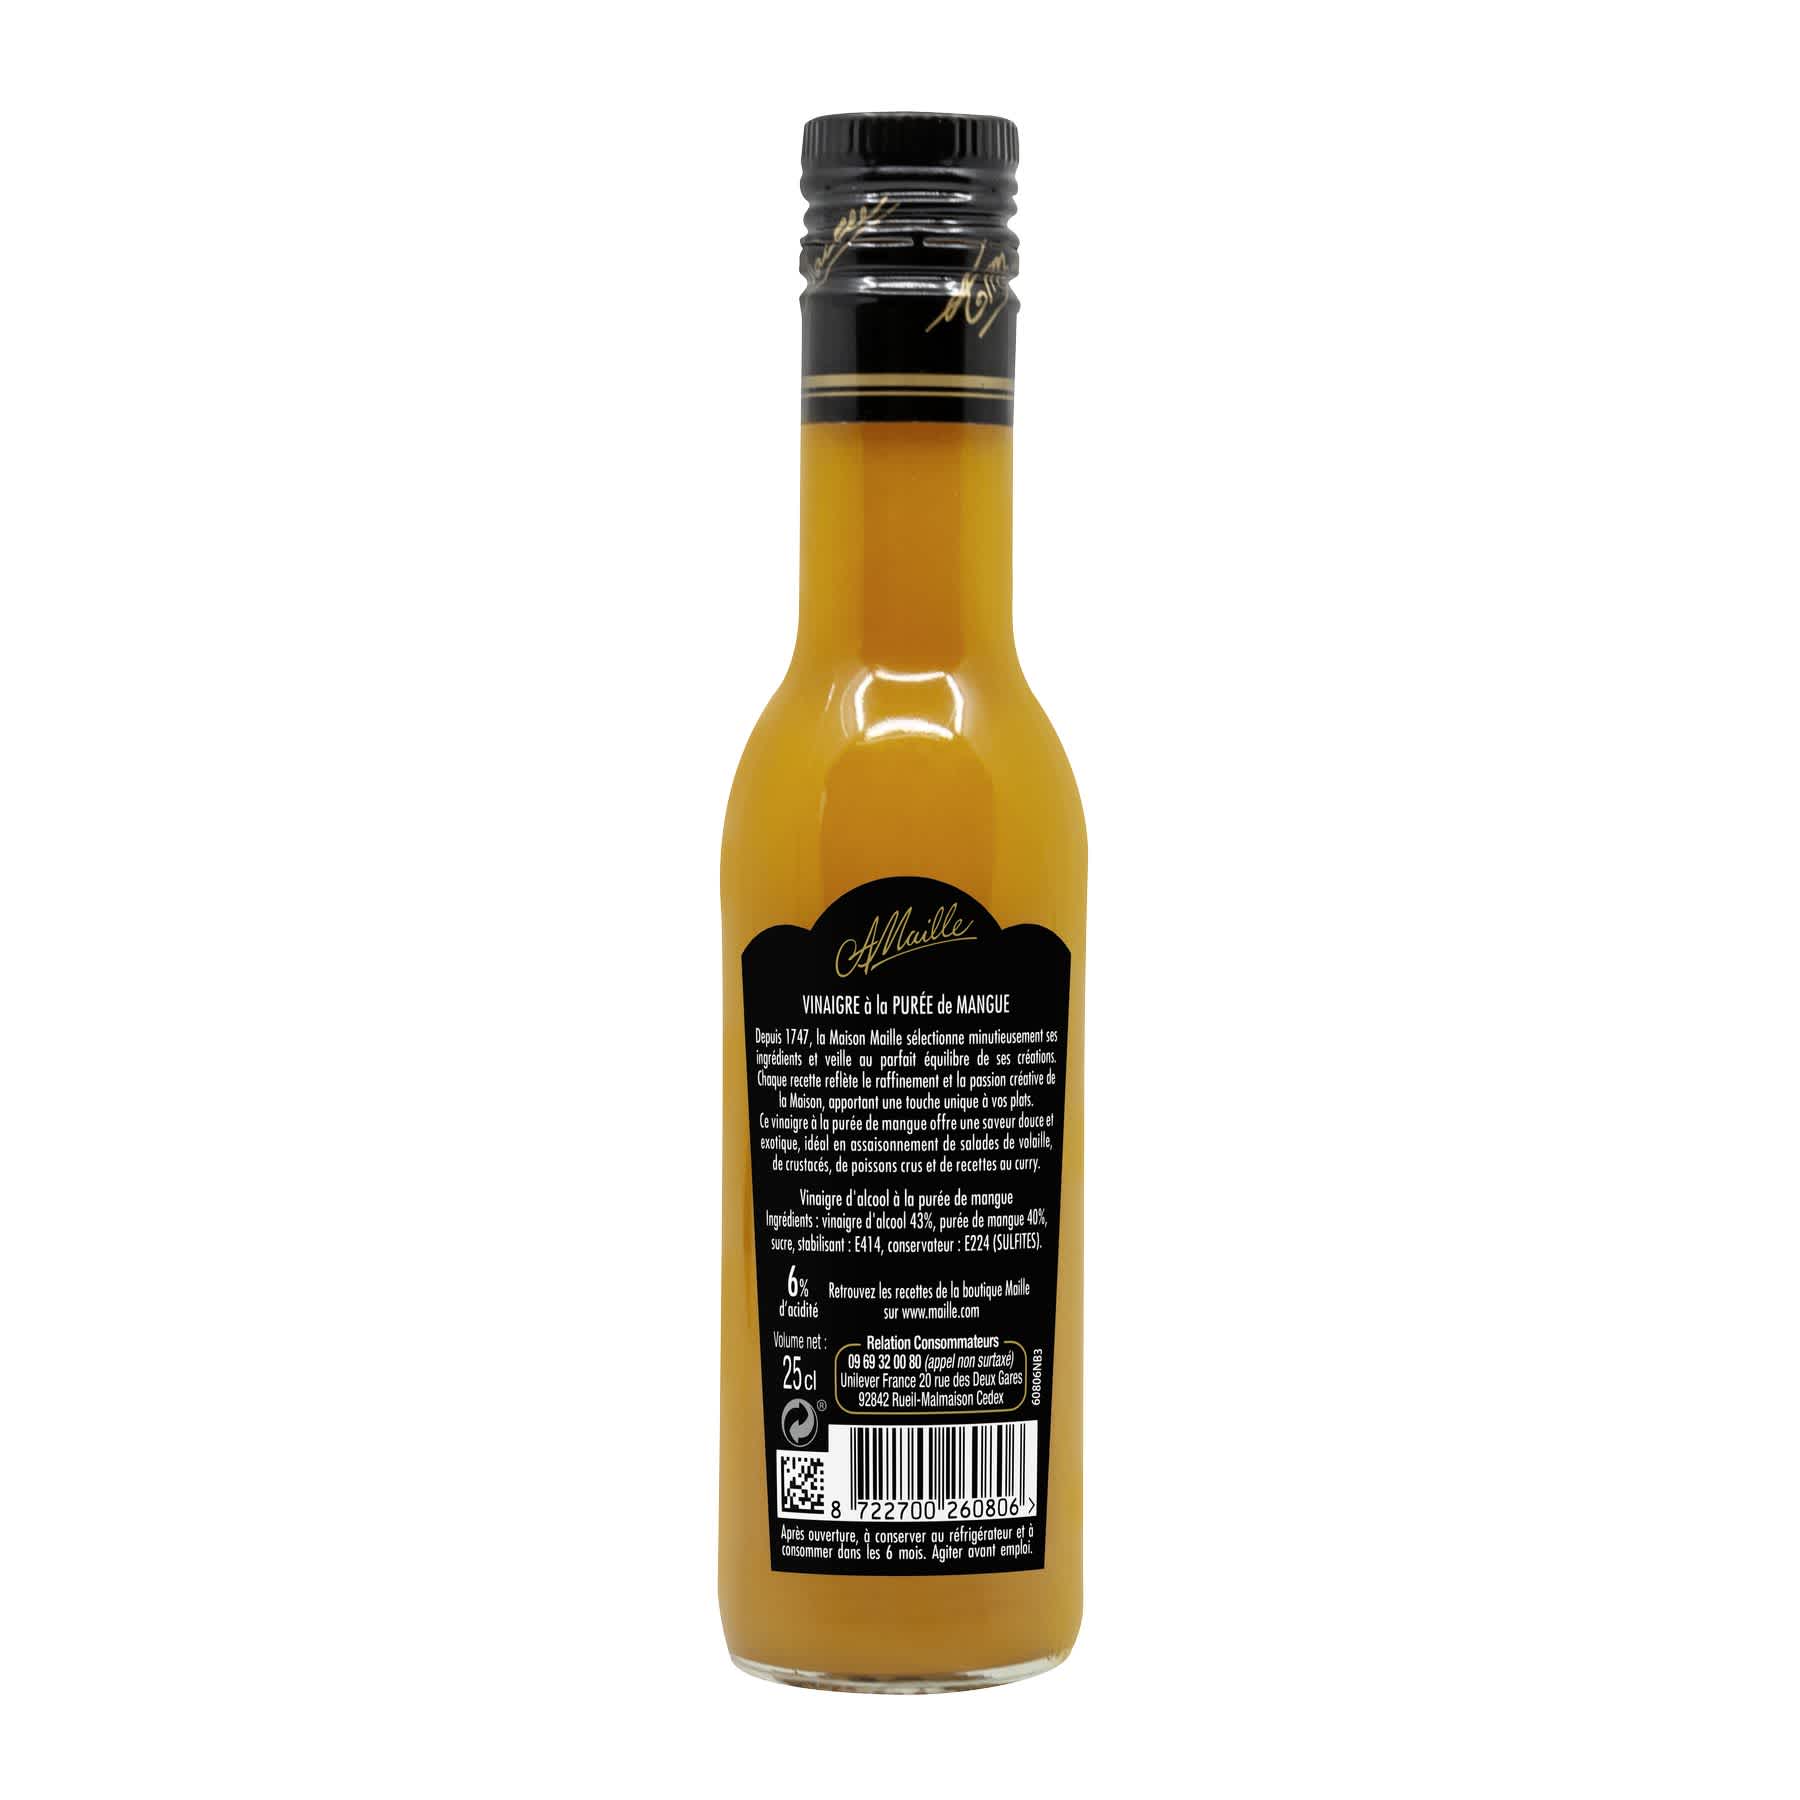 Maille - Vinaigre a la puree de mangue, 250 ml, backend